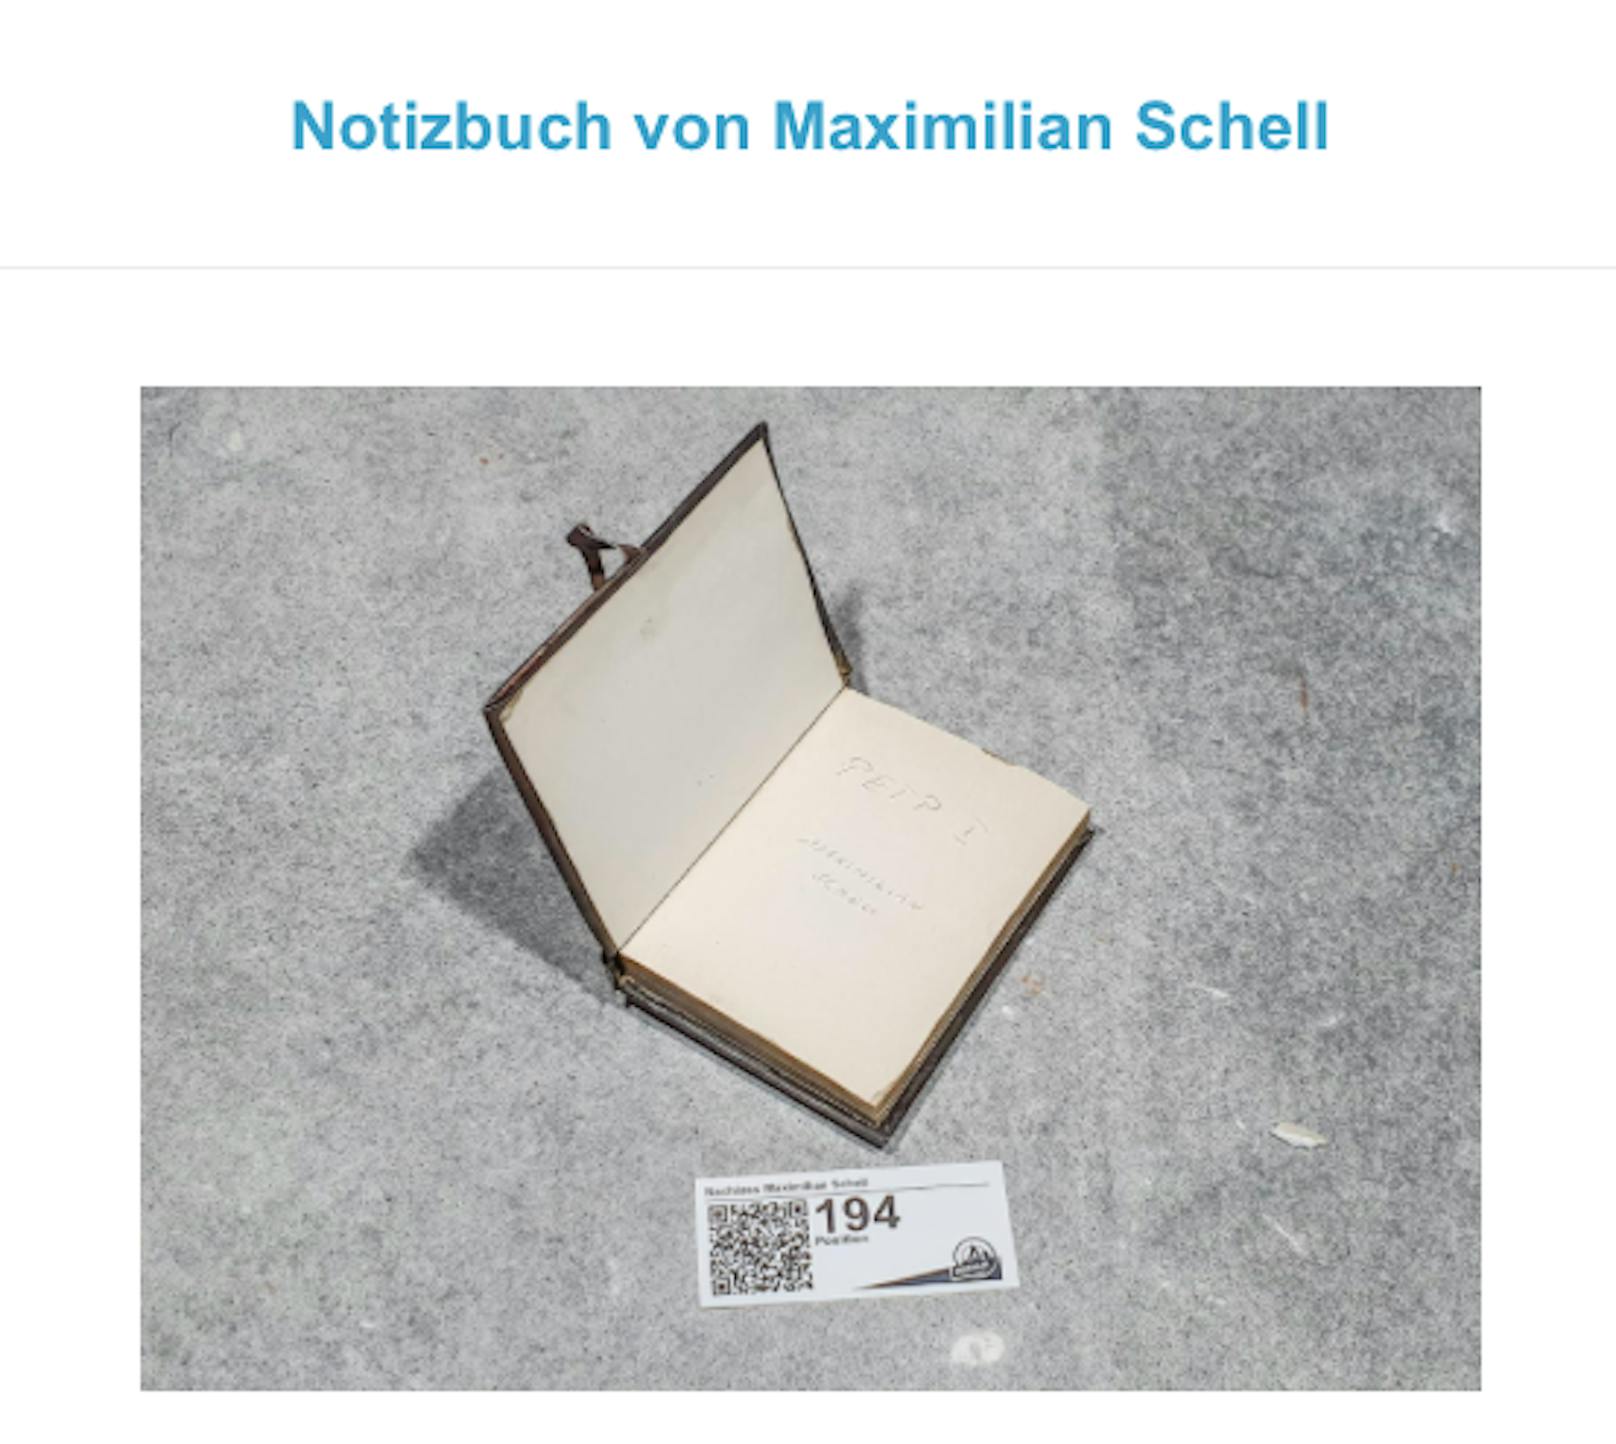 Notizbuch von Maximilian Schell